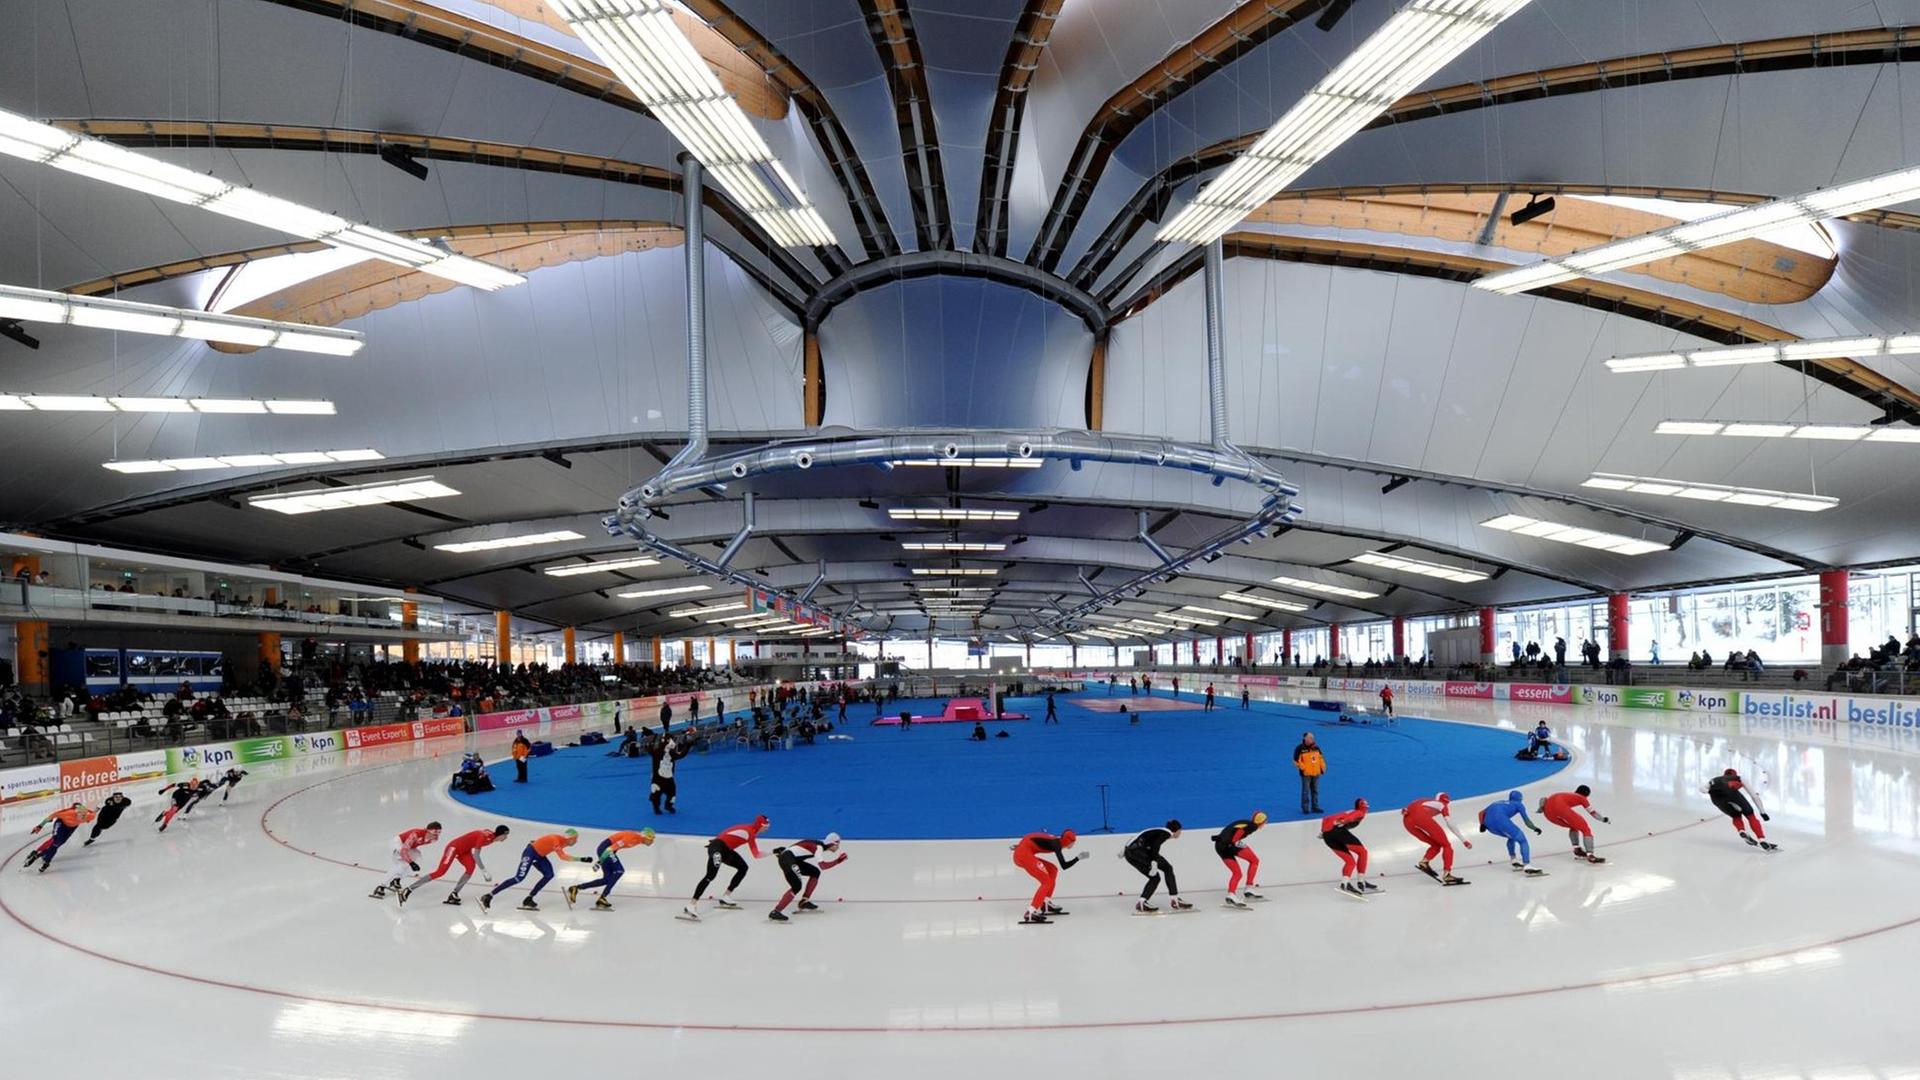  Eissporthalle in Inzell beim Eisschnellauf-Weltcup